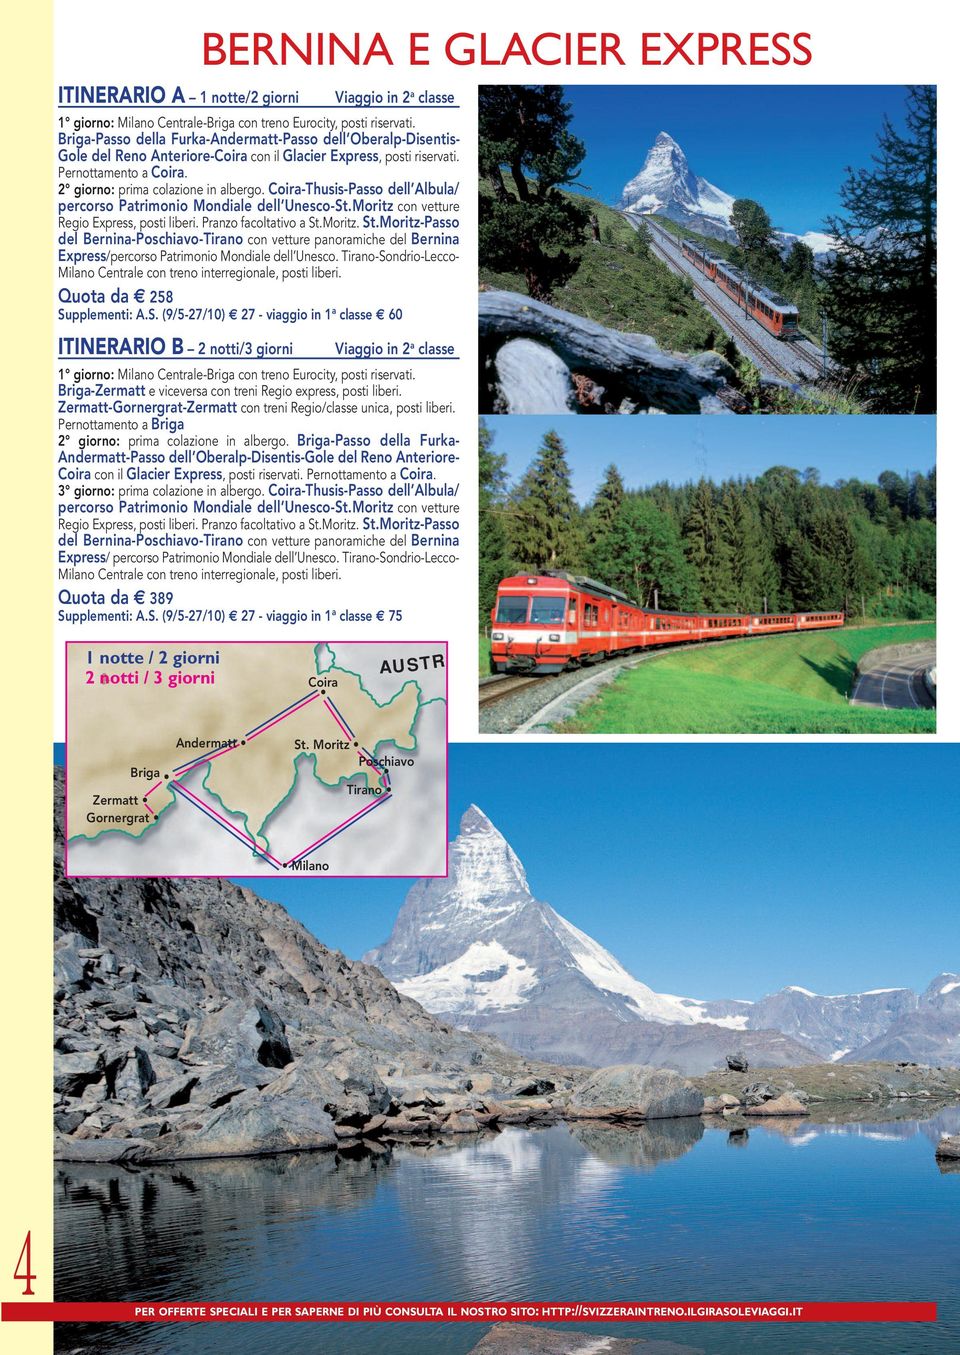 Coira-Thusis-Passo dell Albula/ percorso Patrimonio Mondiale dell Unesco-St.Moritz con vetture Regio Express, posti liberi. Pranzo facoltativo a St.